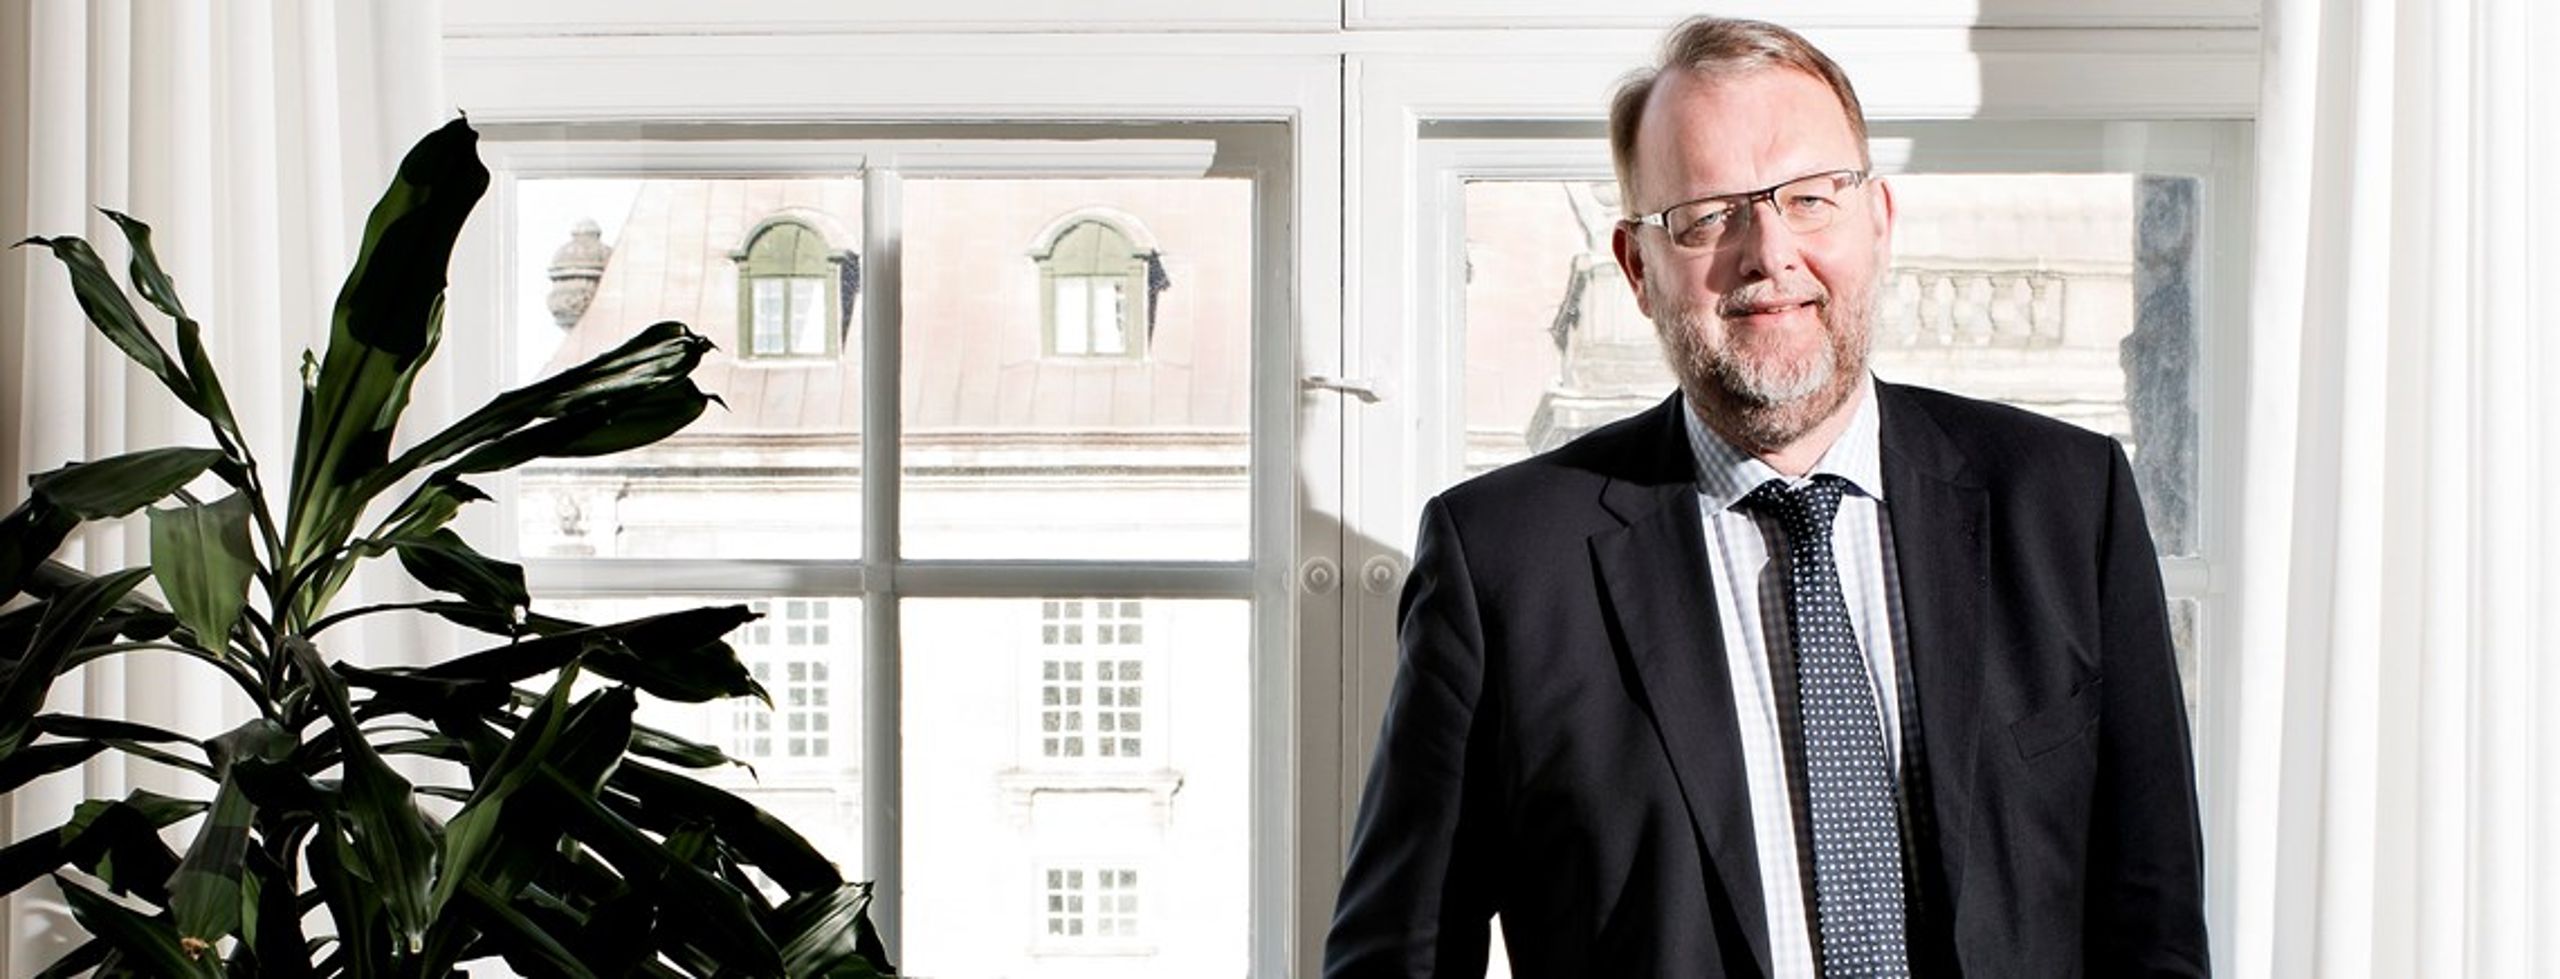 Lars Chr. Lilleholt er ny energi-, forsynings- og klimaminister